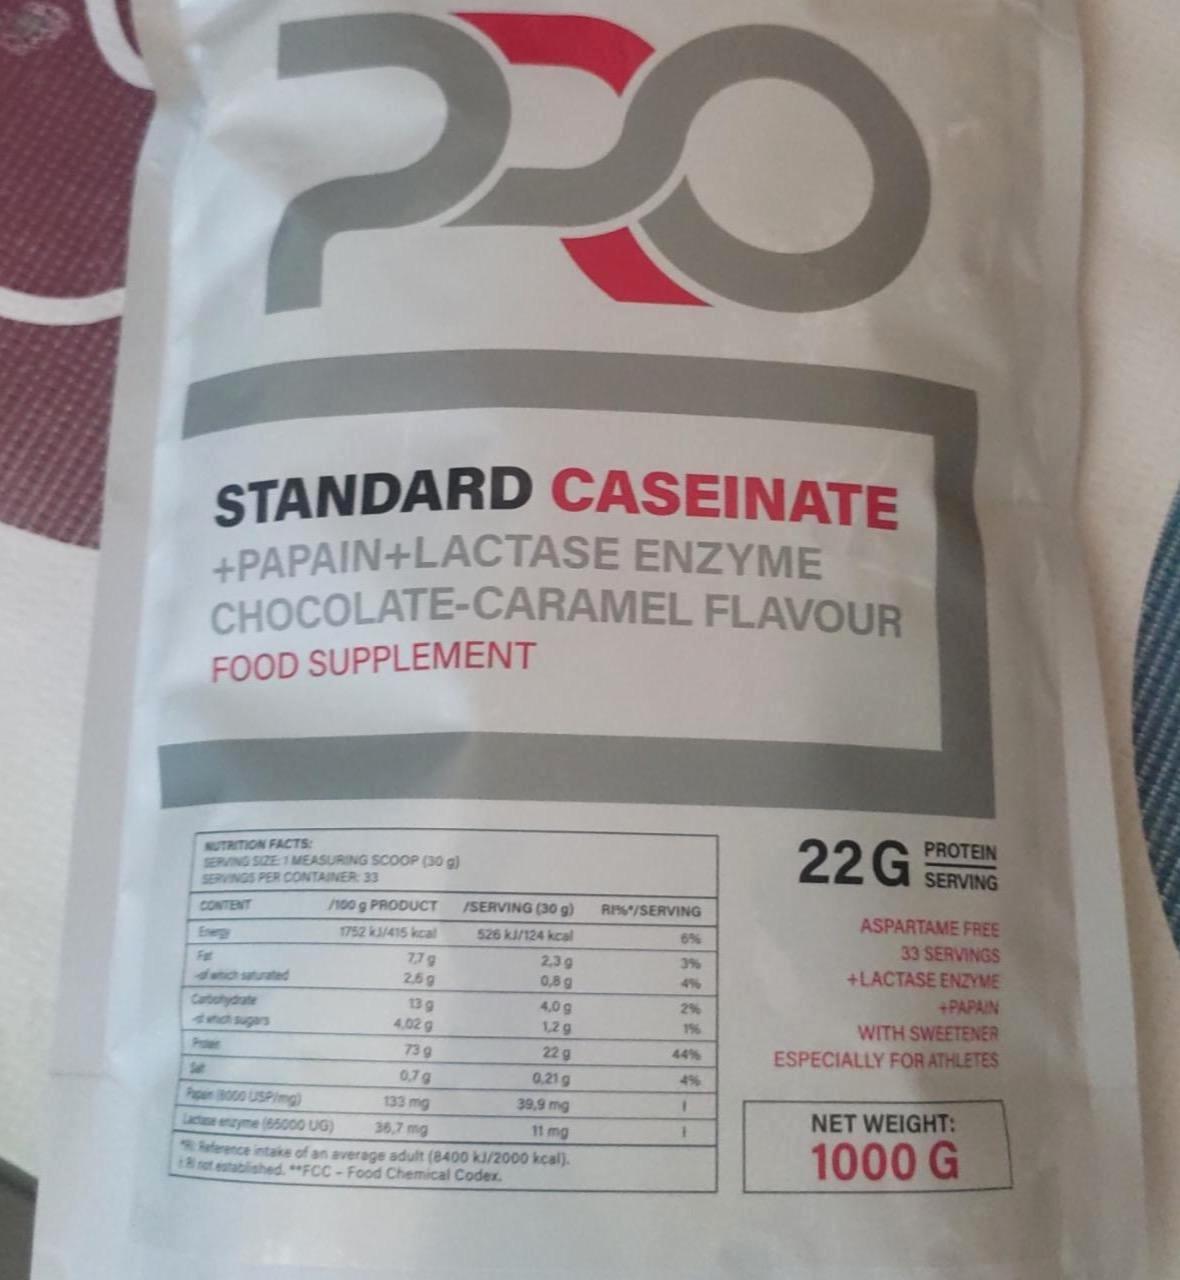 Képek - Pro Standard caseinate Chocolate-caramel flavour